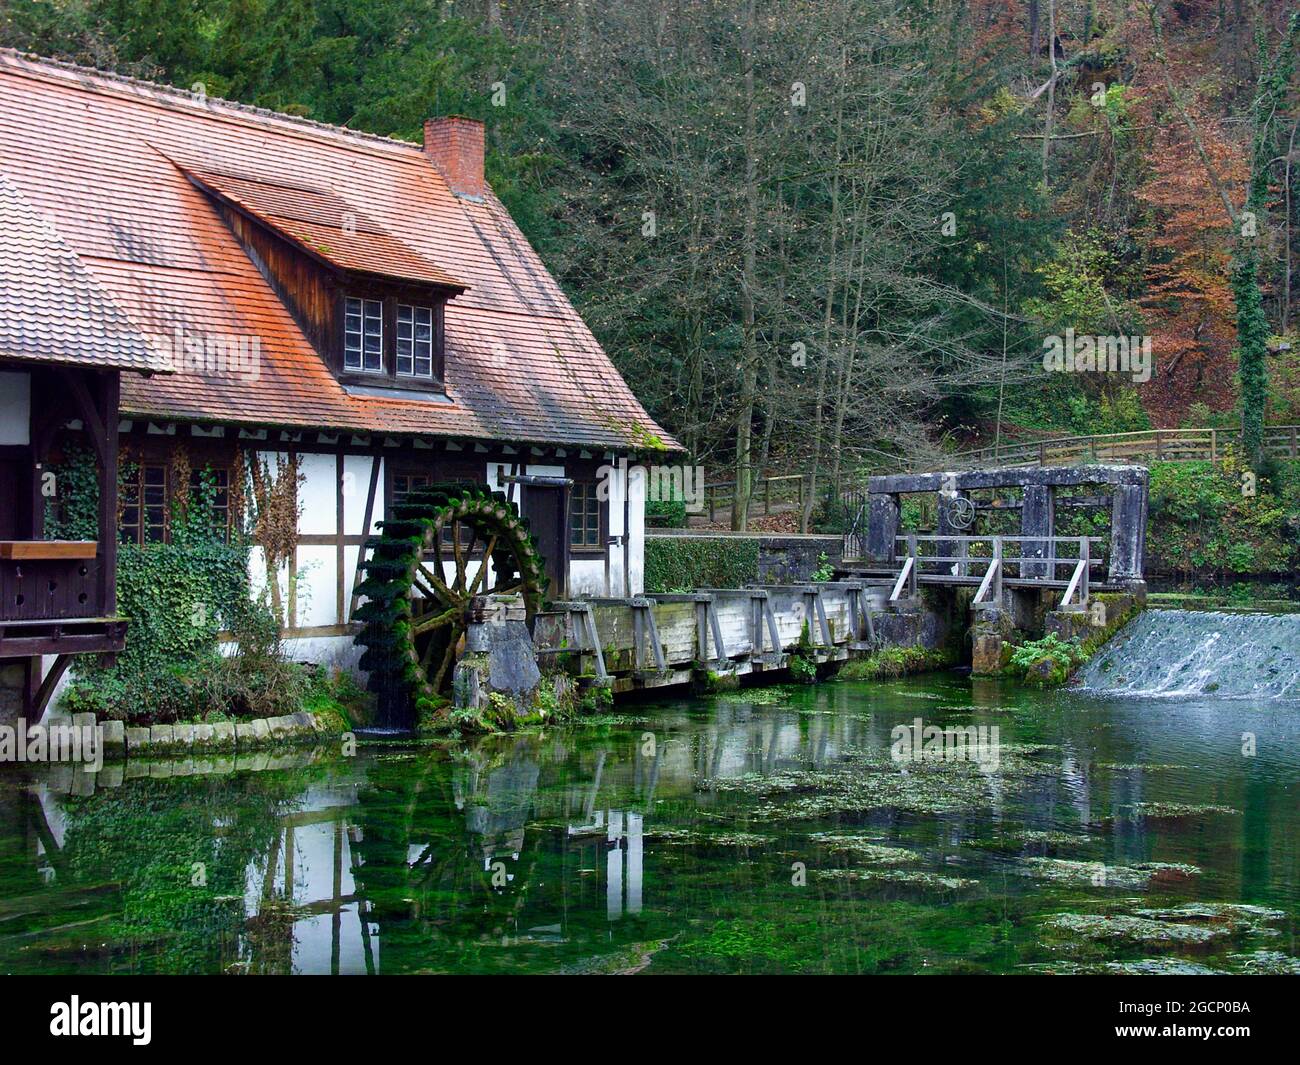 Blaubeuren : moulin à marteau historique au Blatopf, district d'Alb-Donau, Bade-Wurtemberg, Allemagne Banque D'Images